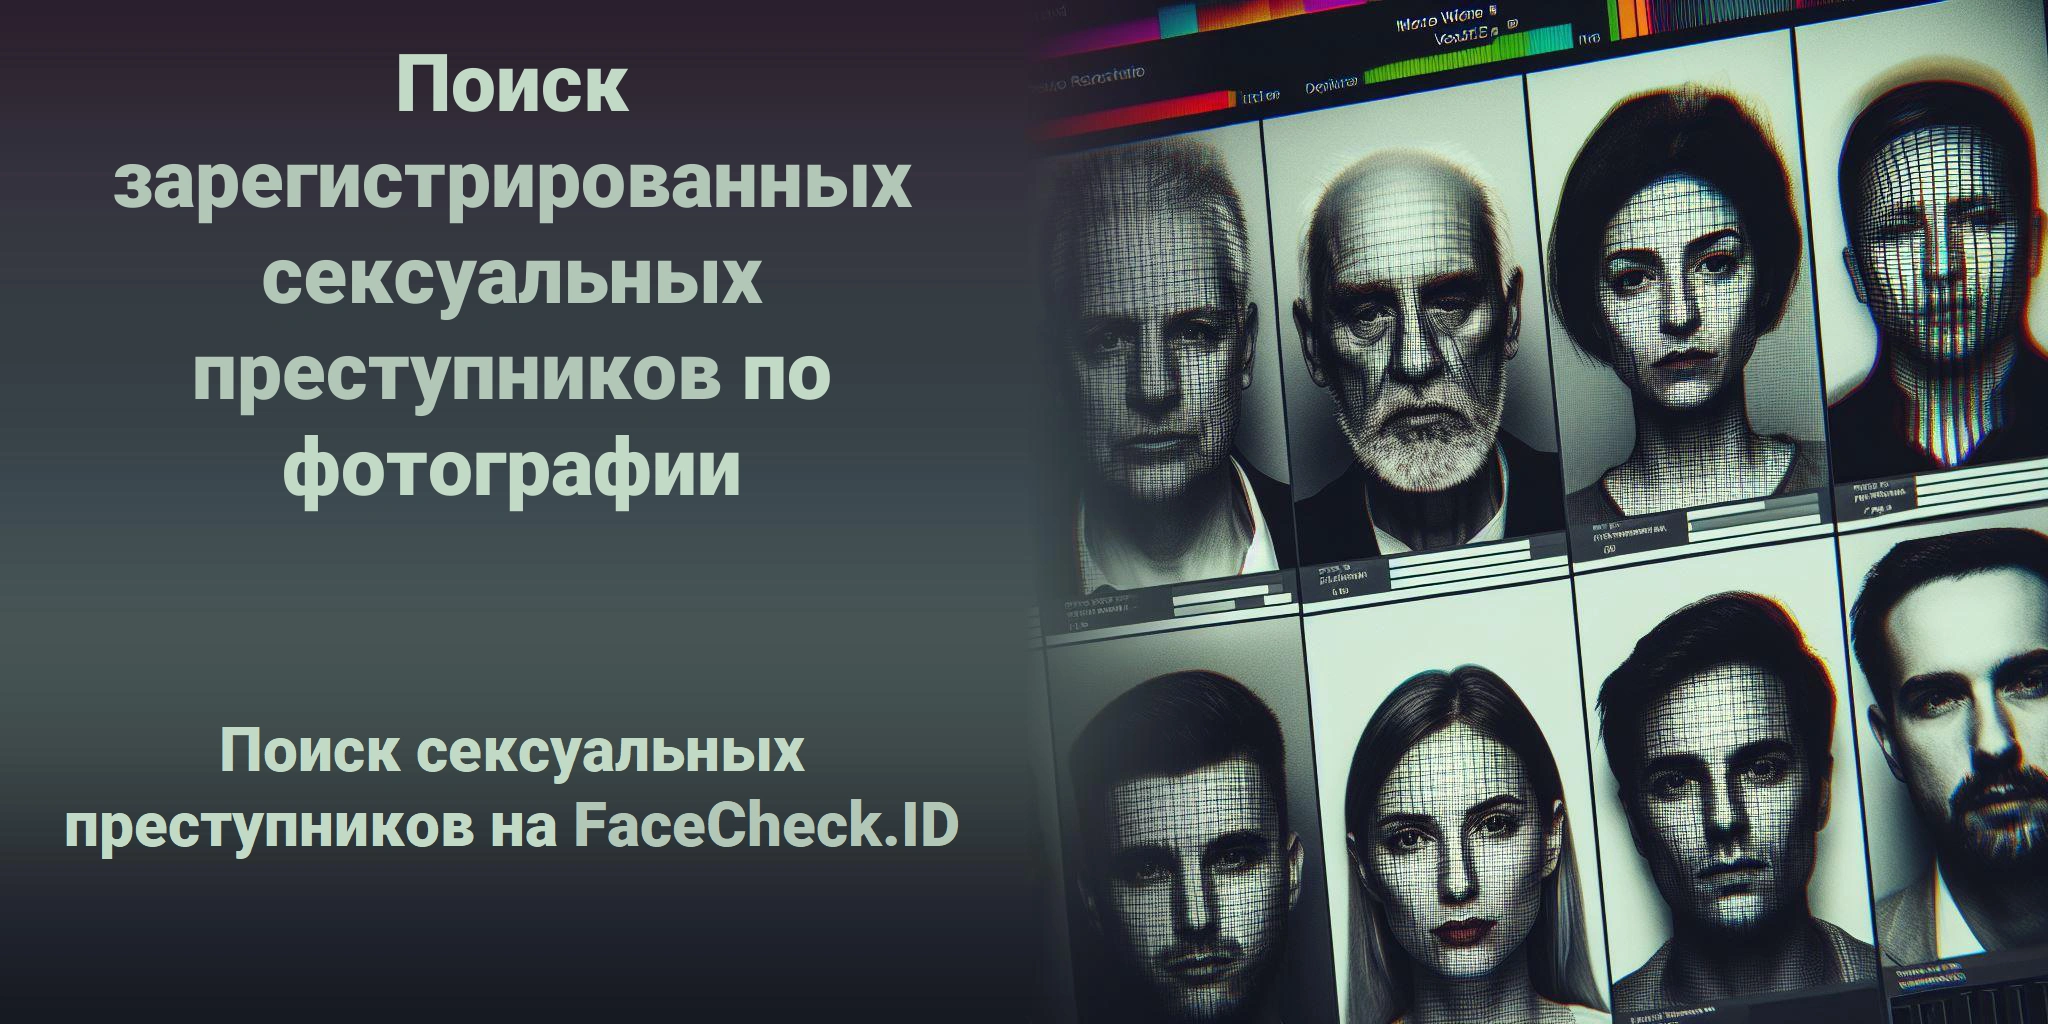 Поиск зарегистрированных сексуальных преступников по фотографии  Поиск сексуальных преступников на FaceCheck.ID 